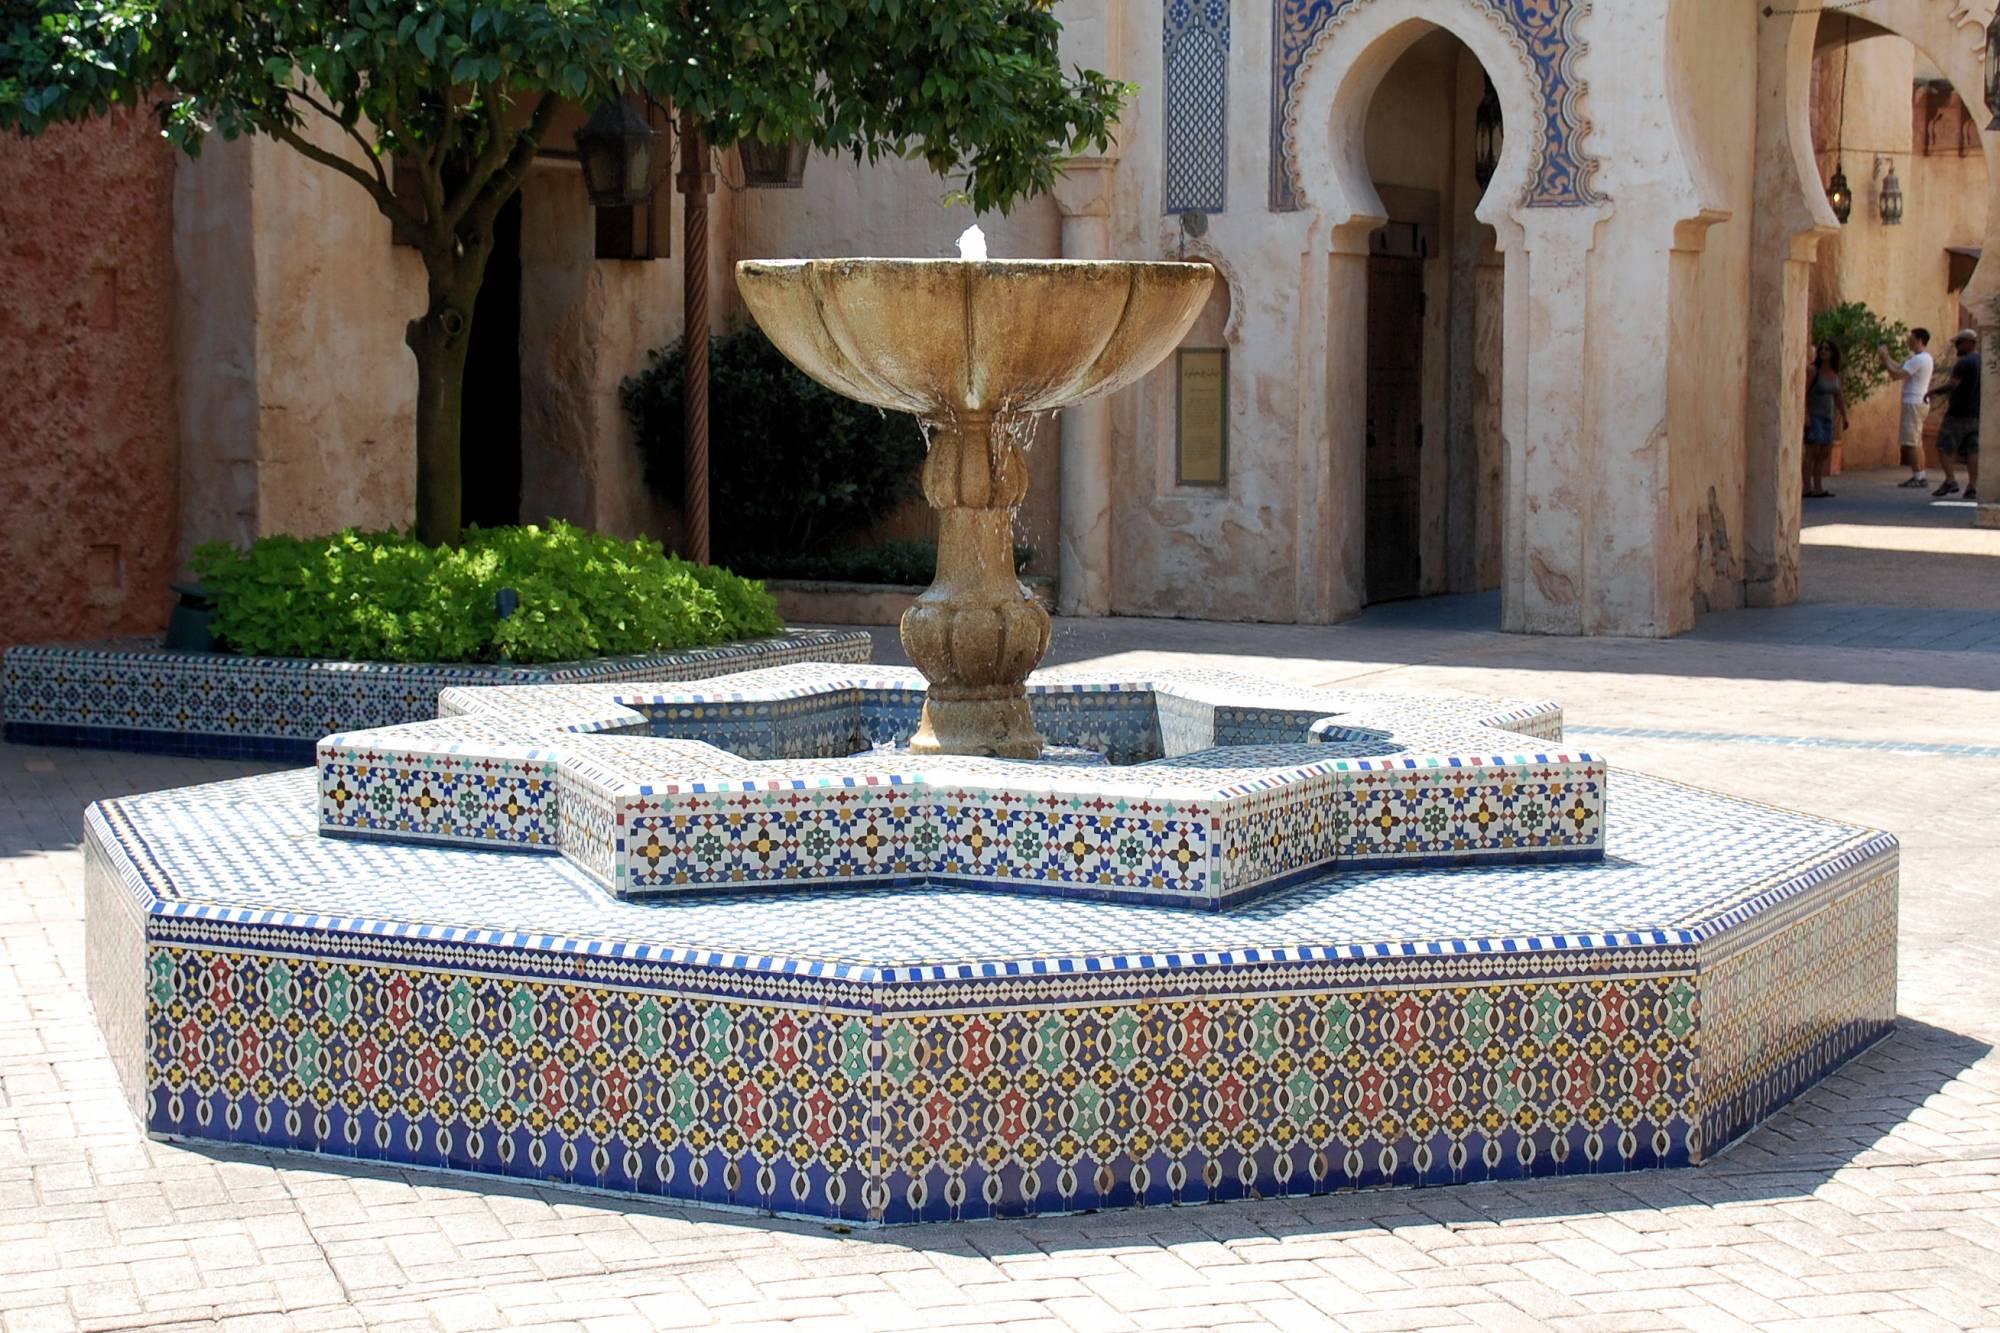 Morocco fountain